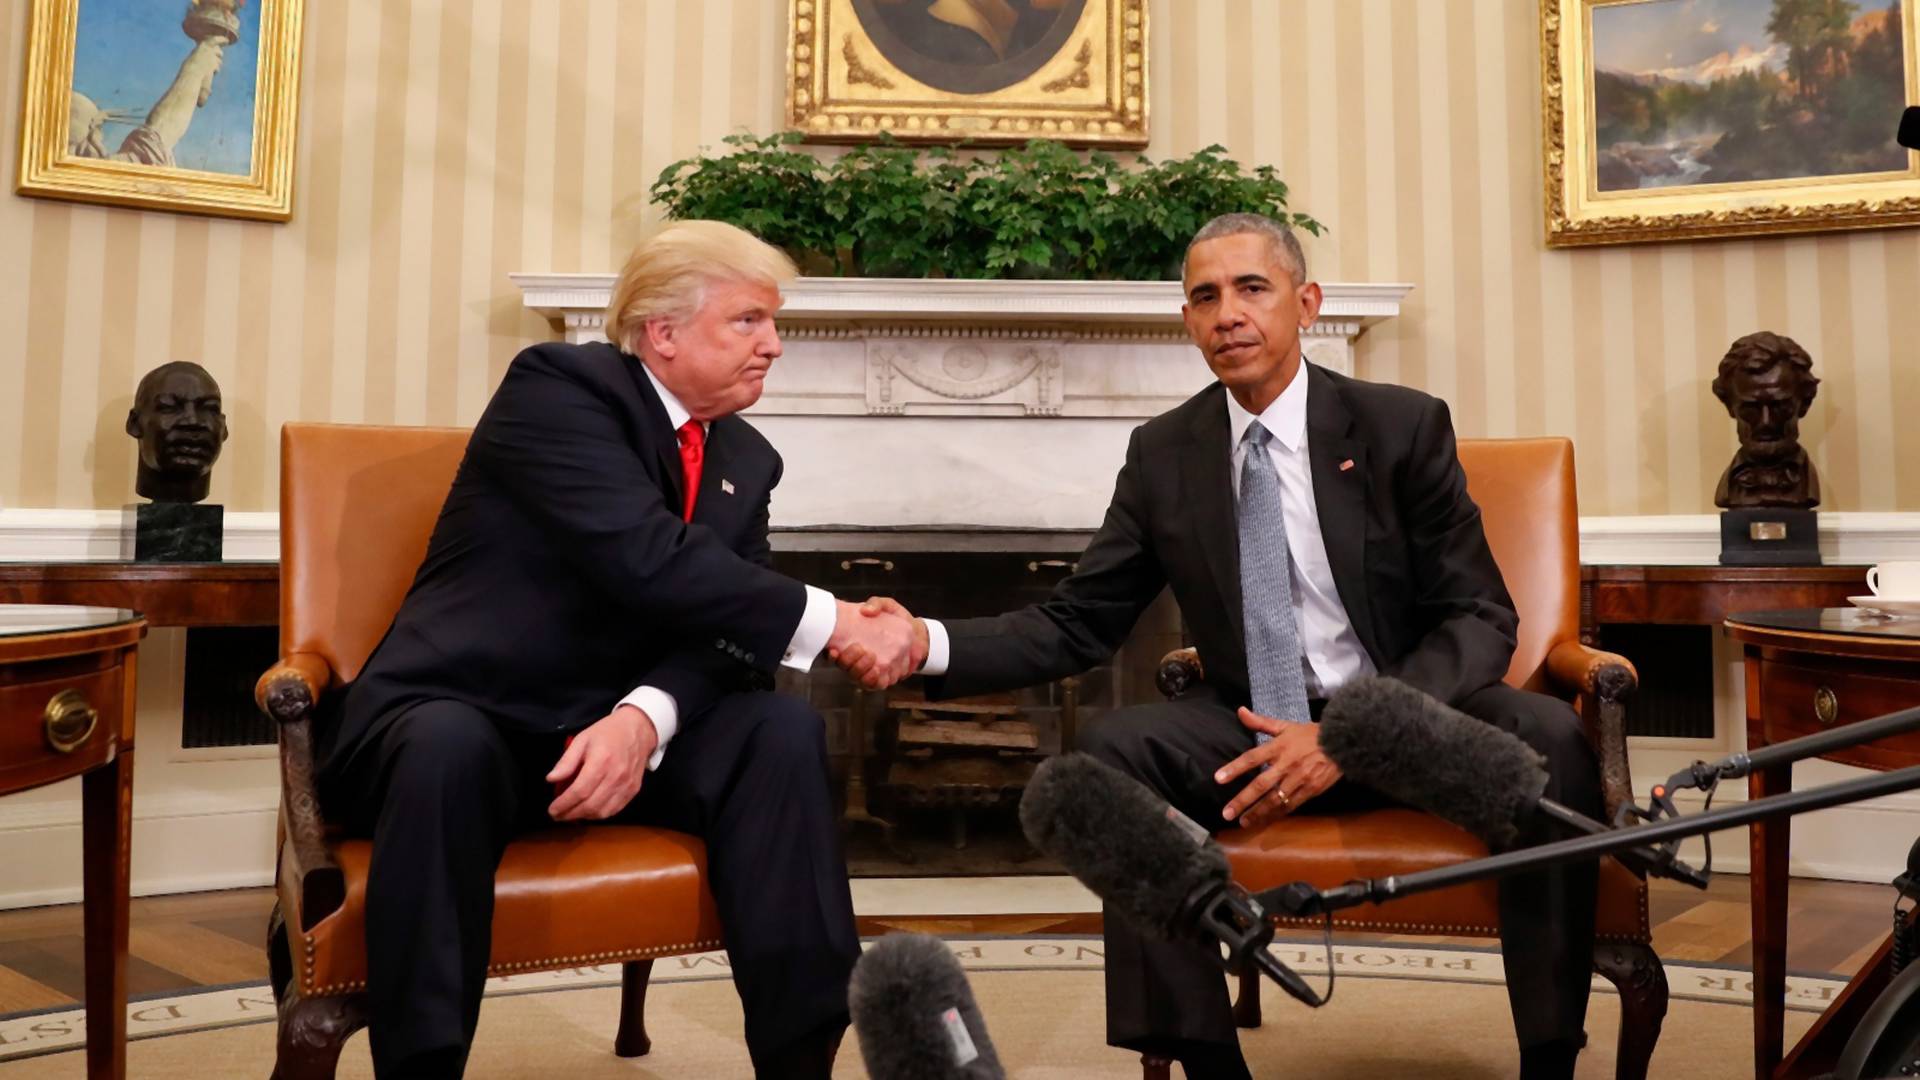 Detalji sastanka Trampa i Obame: Budući predsednik pojma nema šta mu je posao